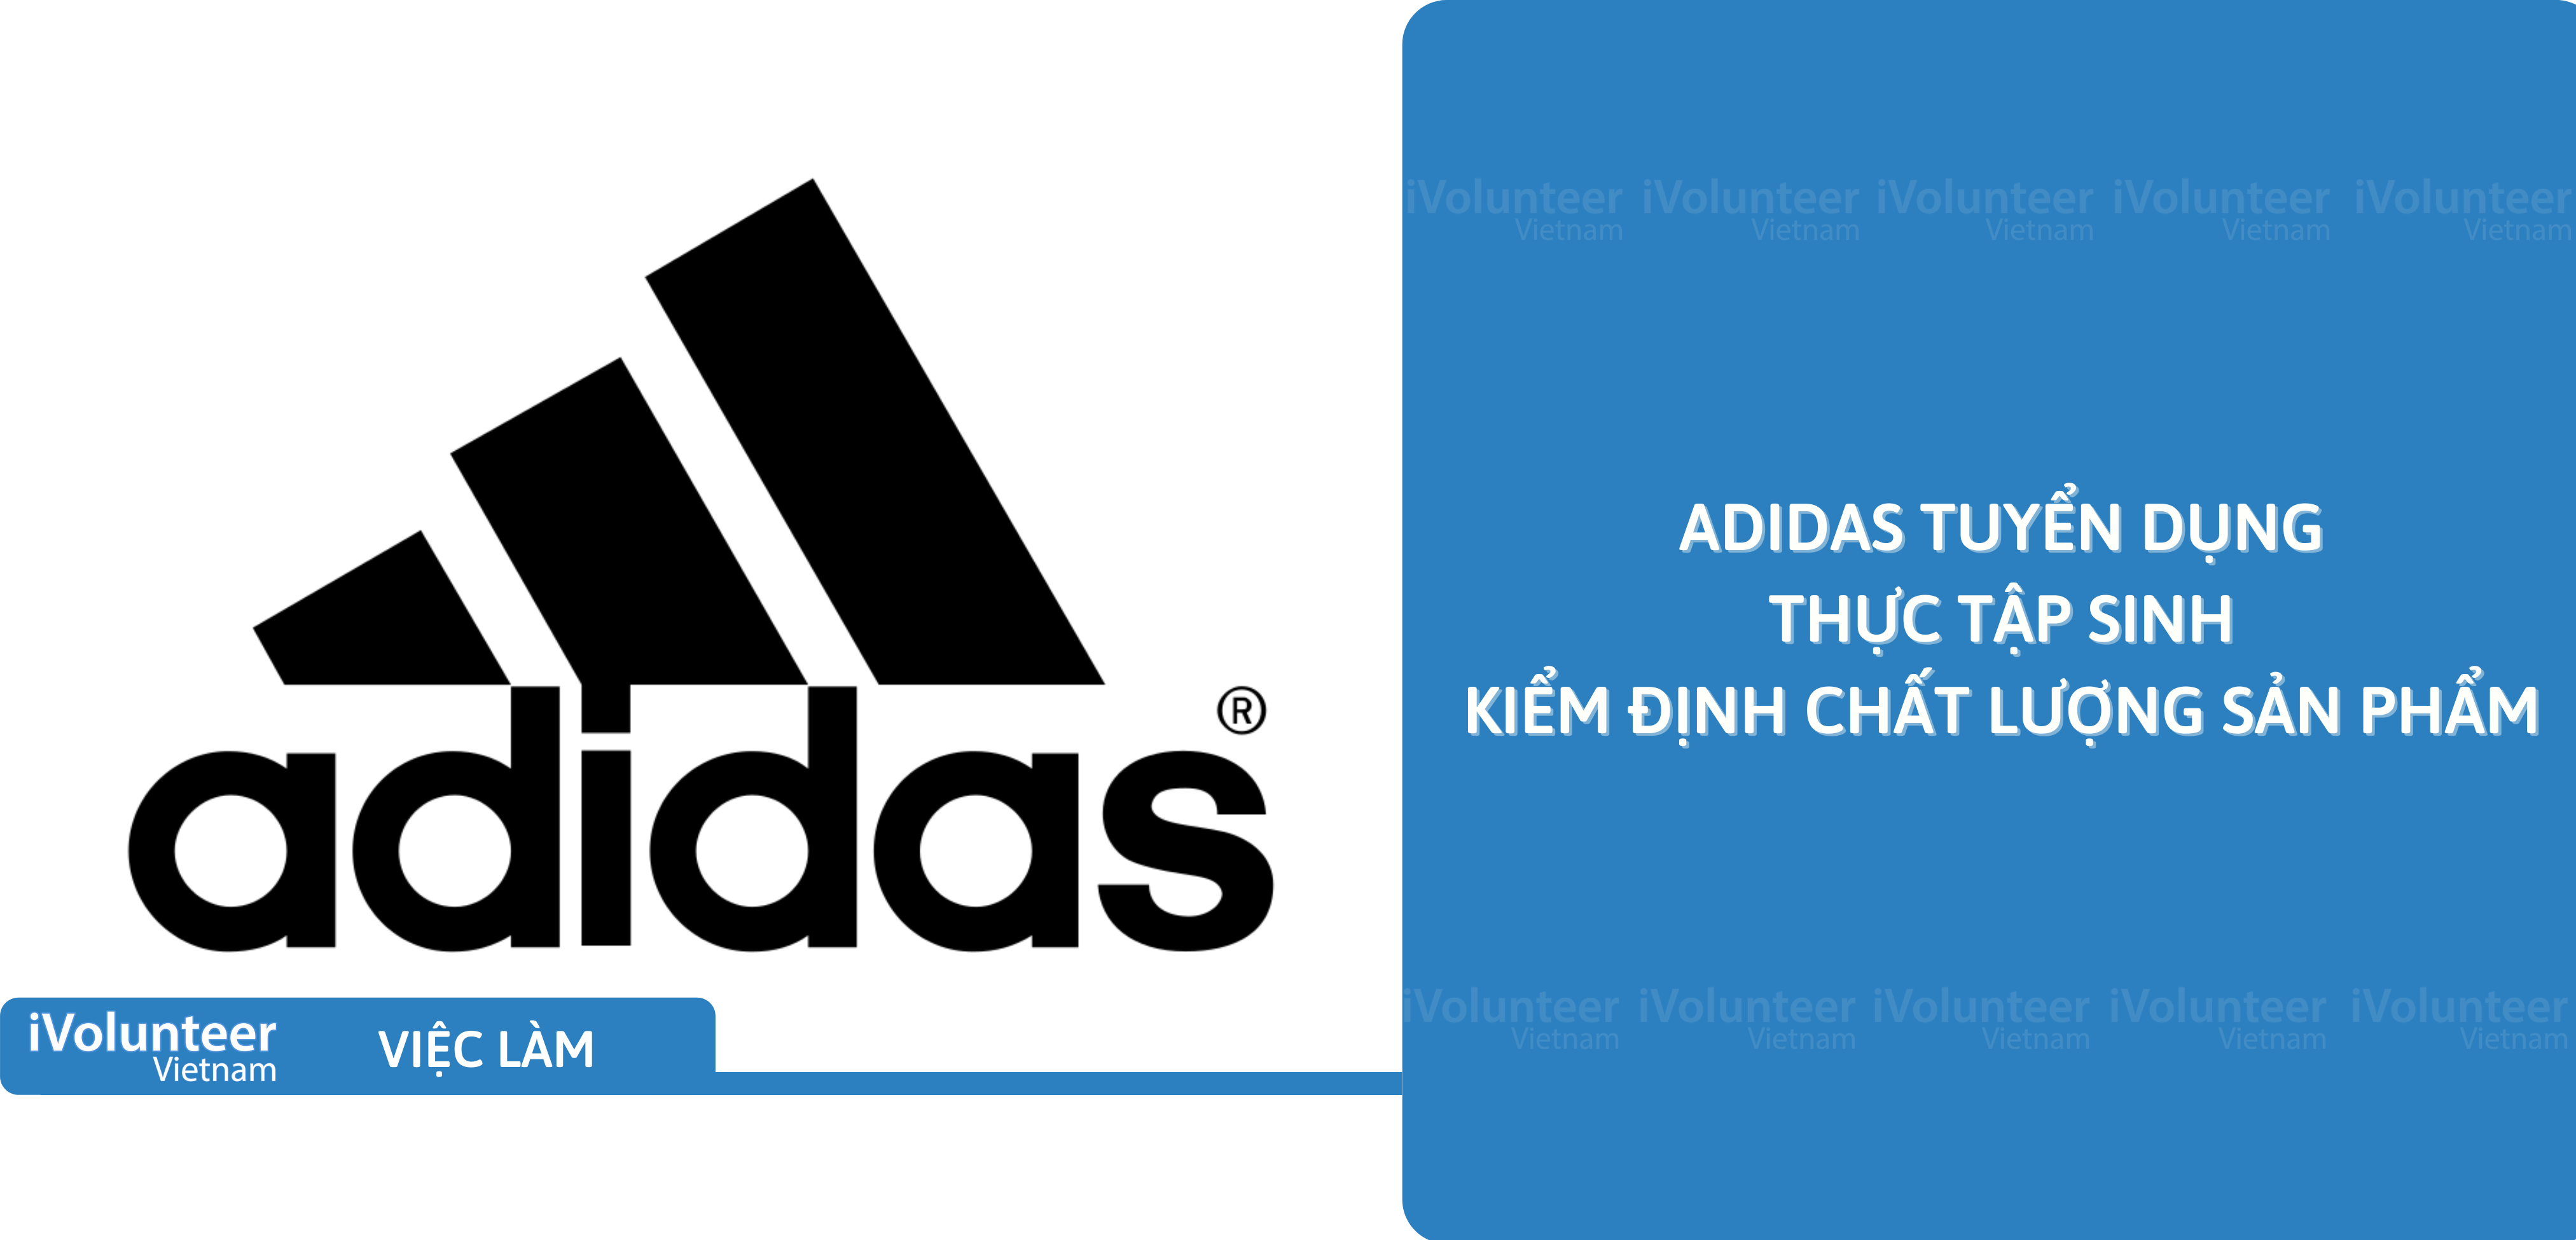 [TP.HCM] Adidas Tuyển Dụng Thực Tập Sinh Kiểm Định Chất Lượng Sản Phẩm